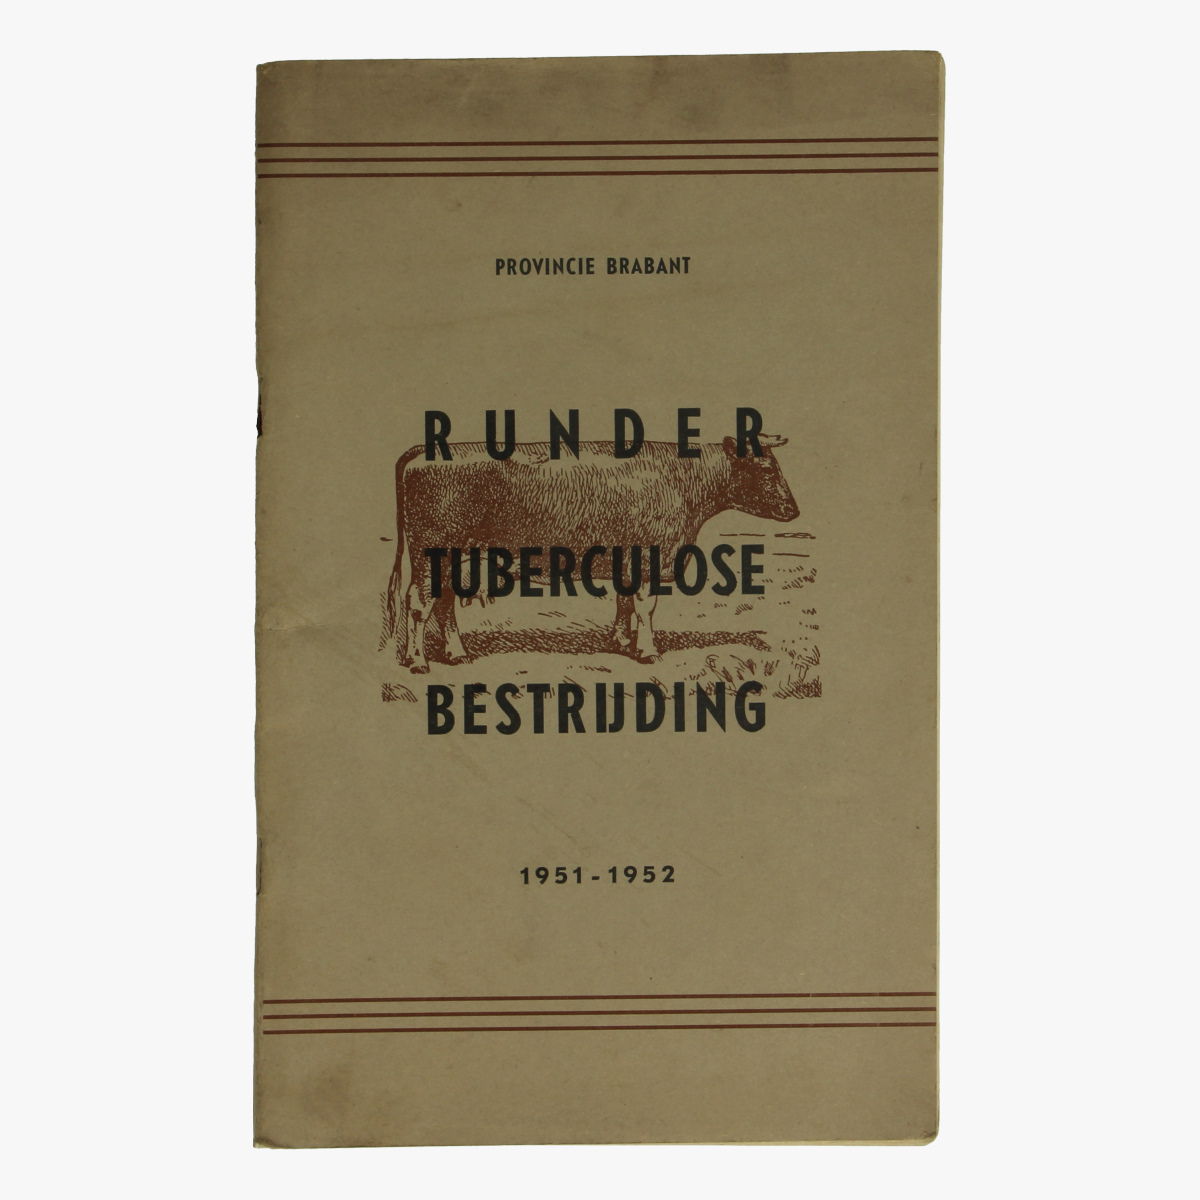 Afbeeldingen van Rundertuberculosebestrijding 1951-1952 Provincie Brabant. Boek